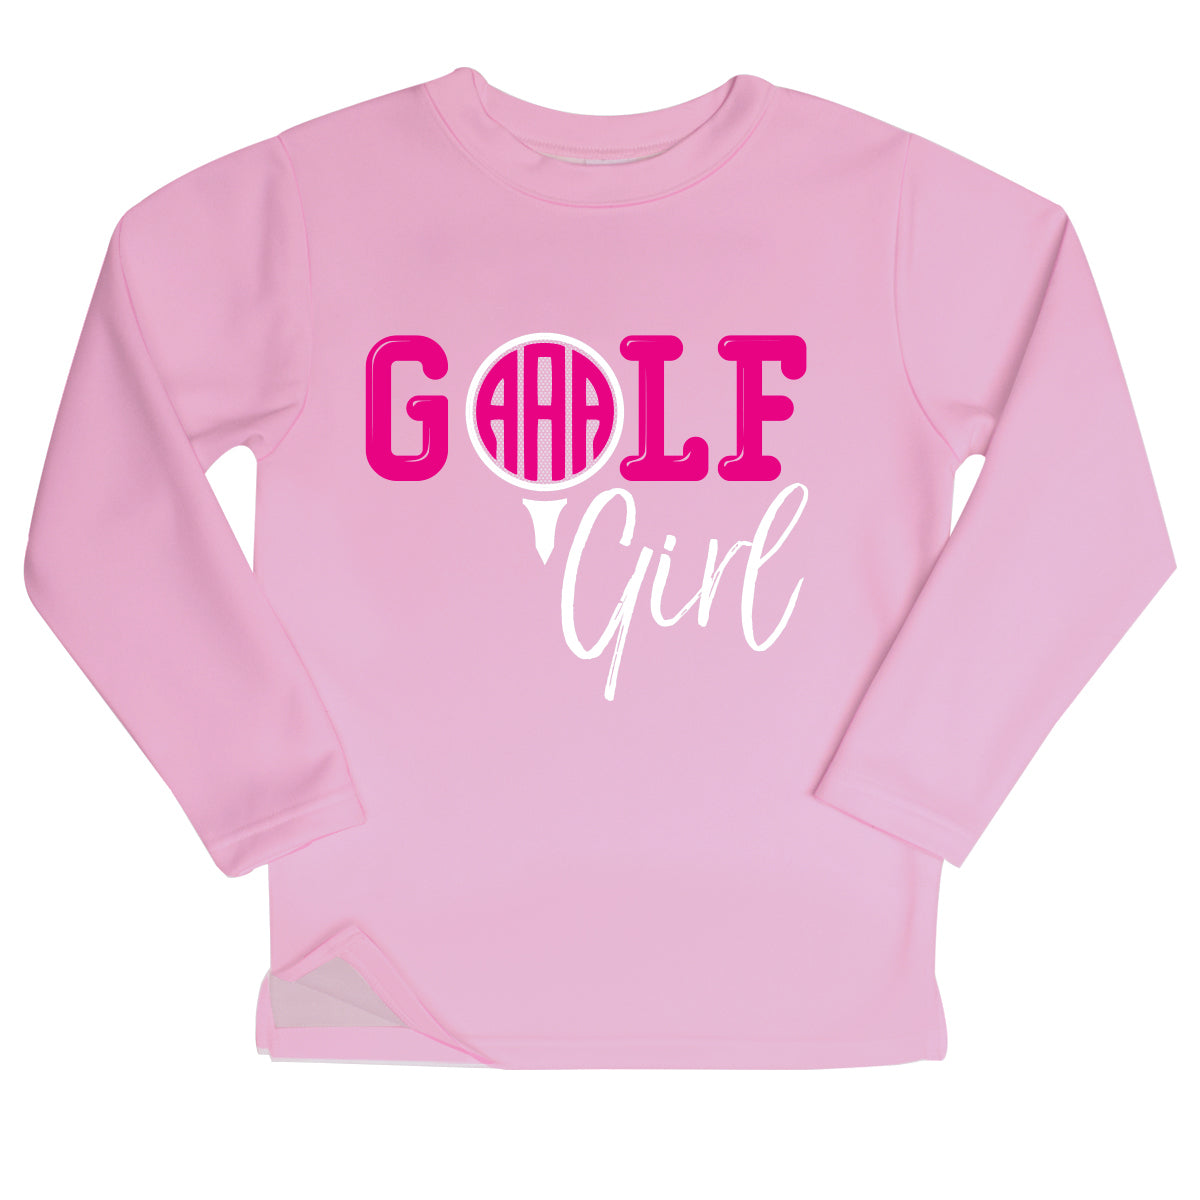 Golf Girl Monogram Pink Fleece Sweatshirt Side Vents